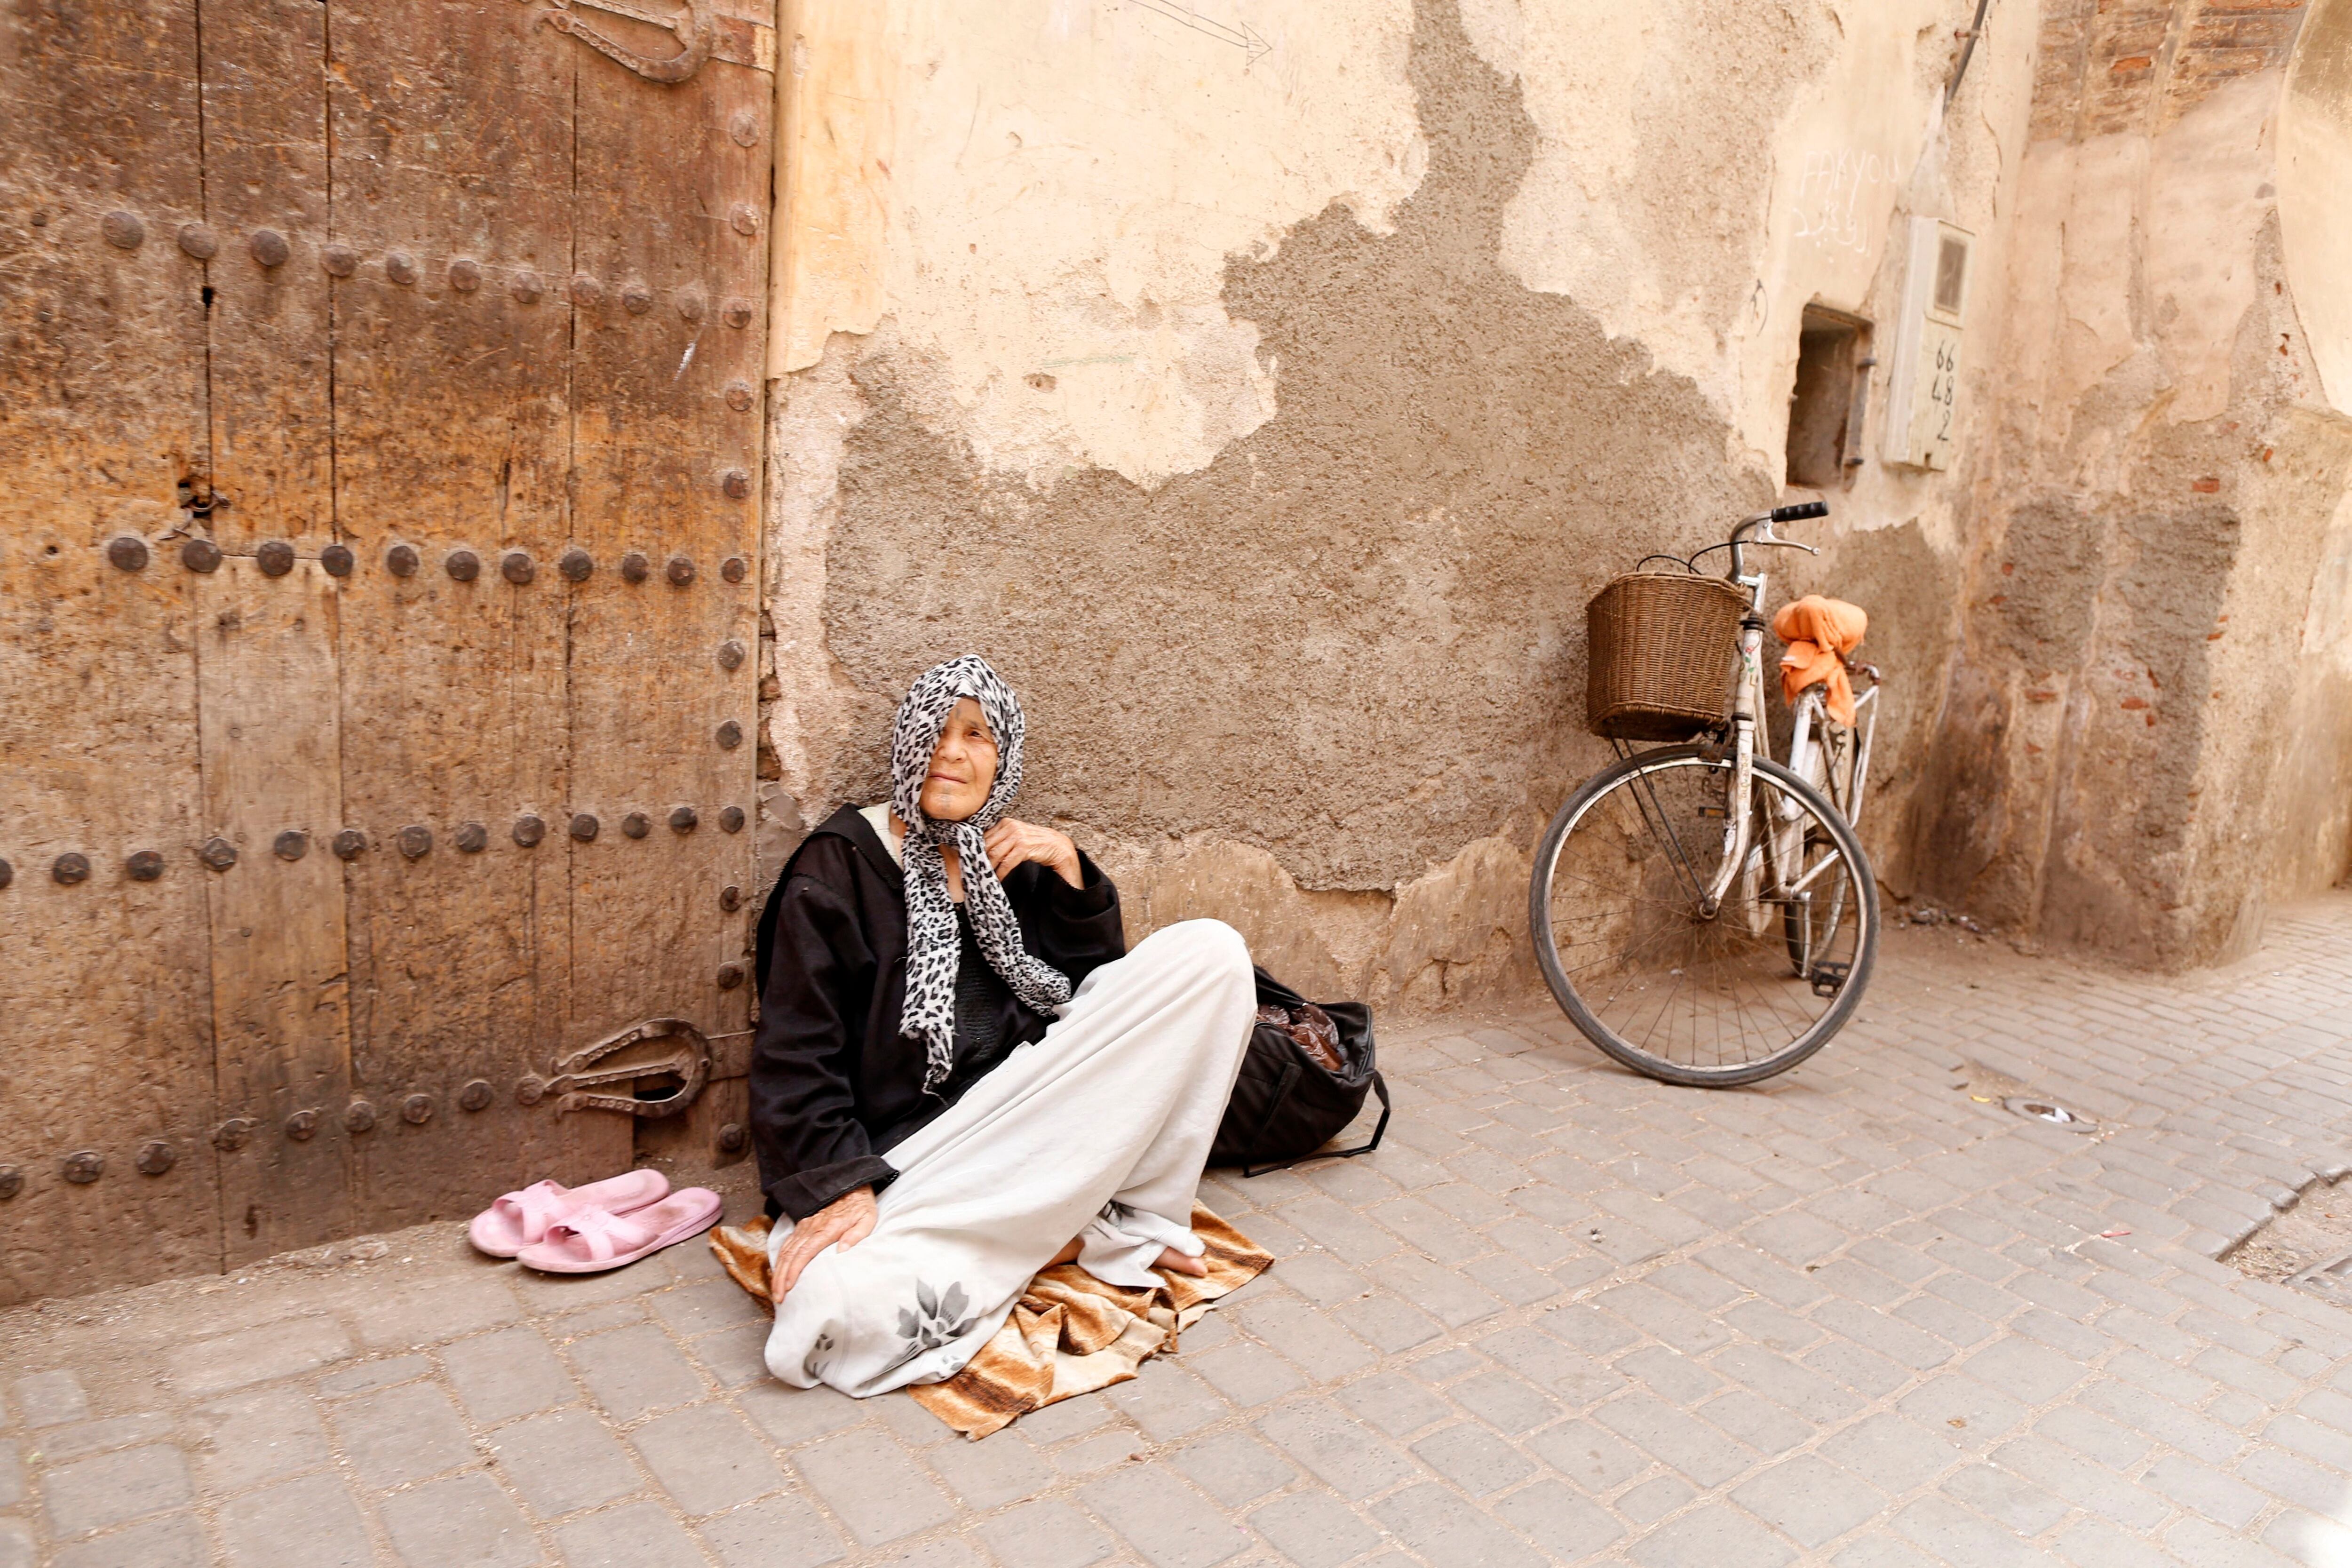 Una mujer en la medina de Marrakech (Marruecos).